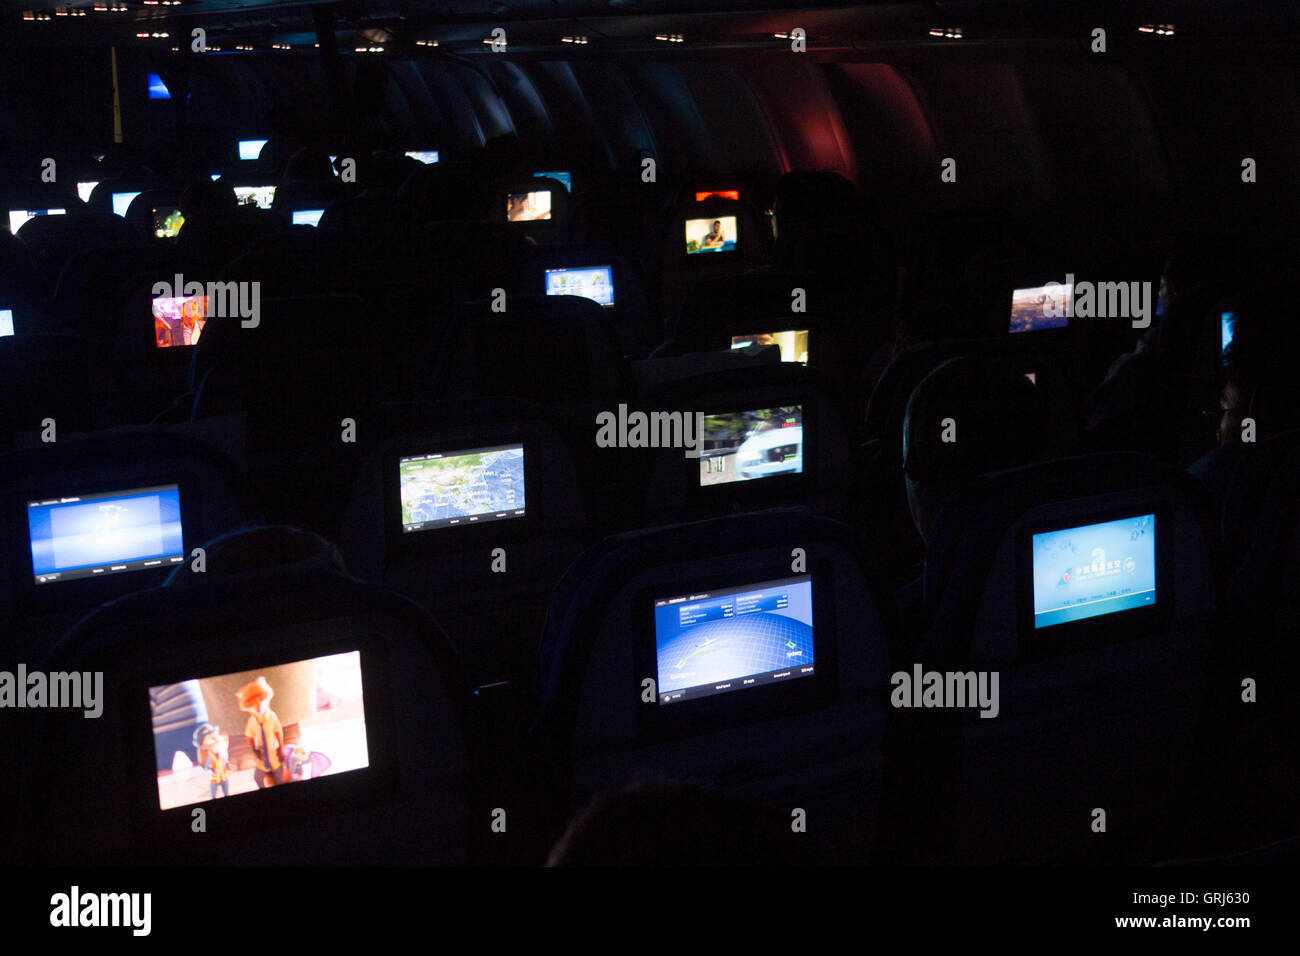 Interior de la cabina de una aeronave con luces atenuadas durante la noche vuelo nocturno con pantallas de TV personales sobre respaldos de los asientos Foto de stock